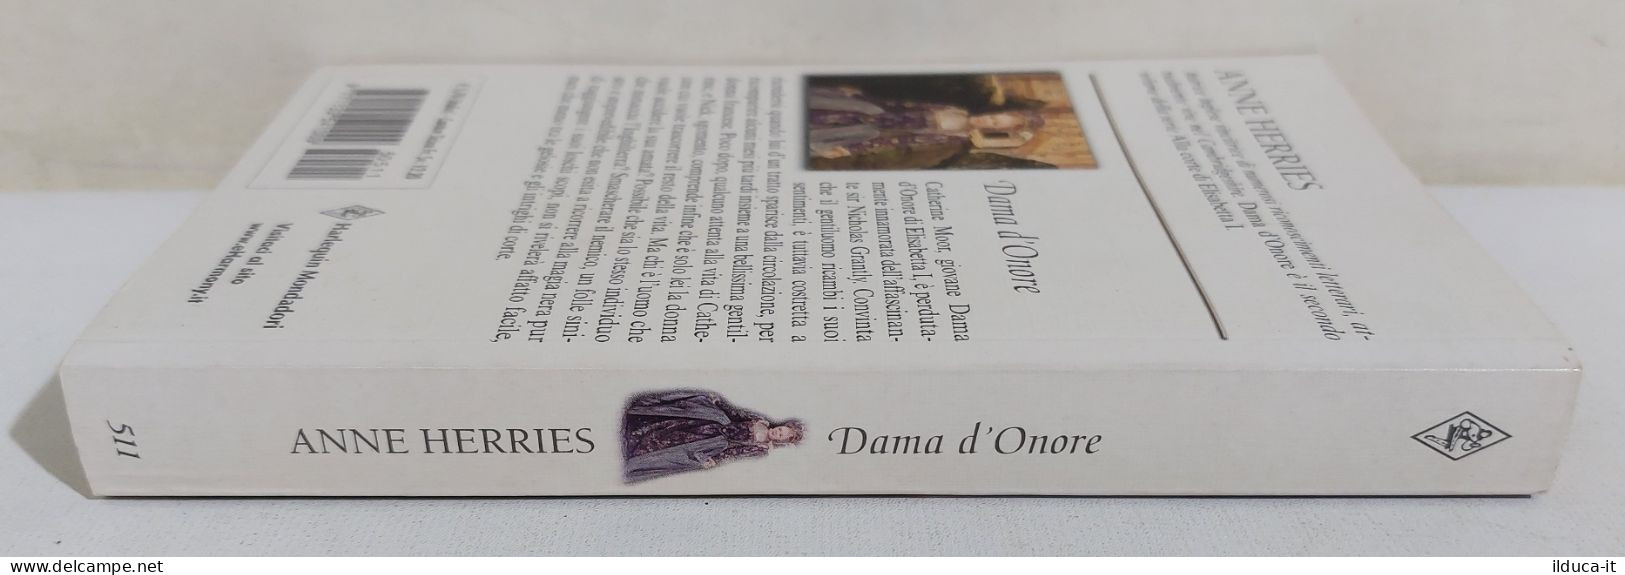 37241 V Anne Herries - Dama D'Onore - Harlequin Mondadori 2005 - Classici